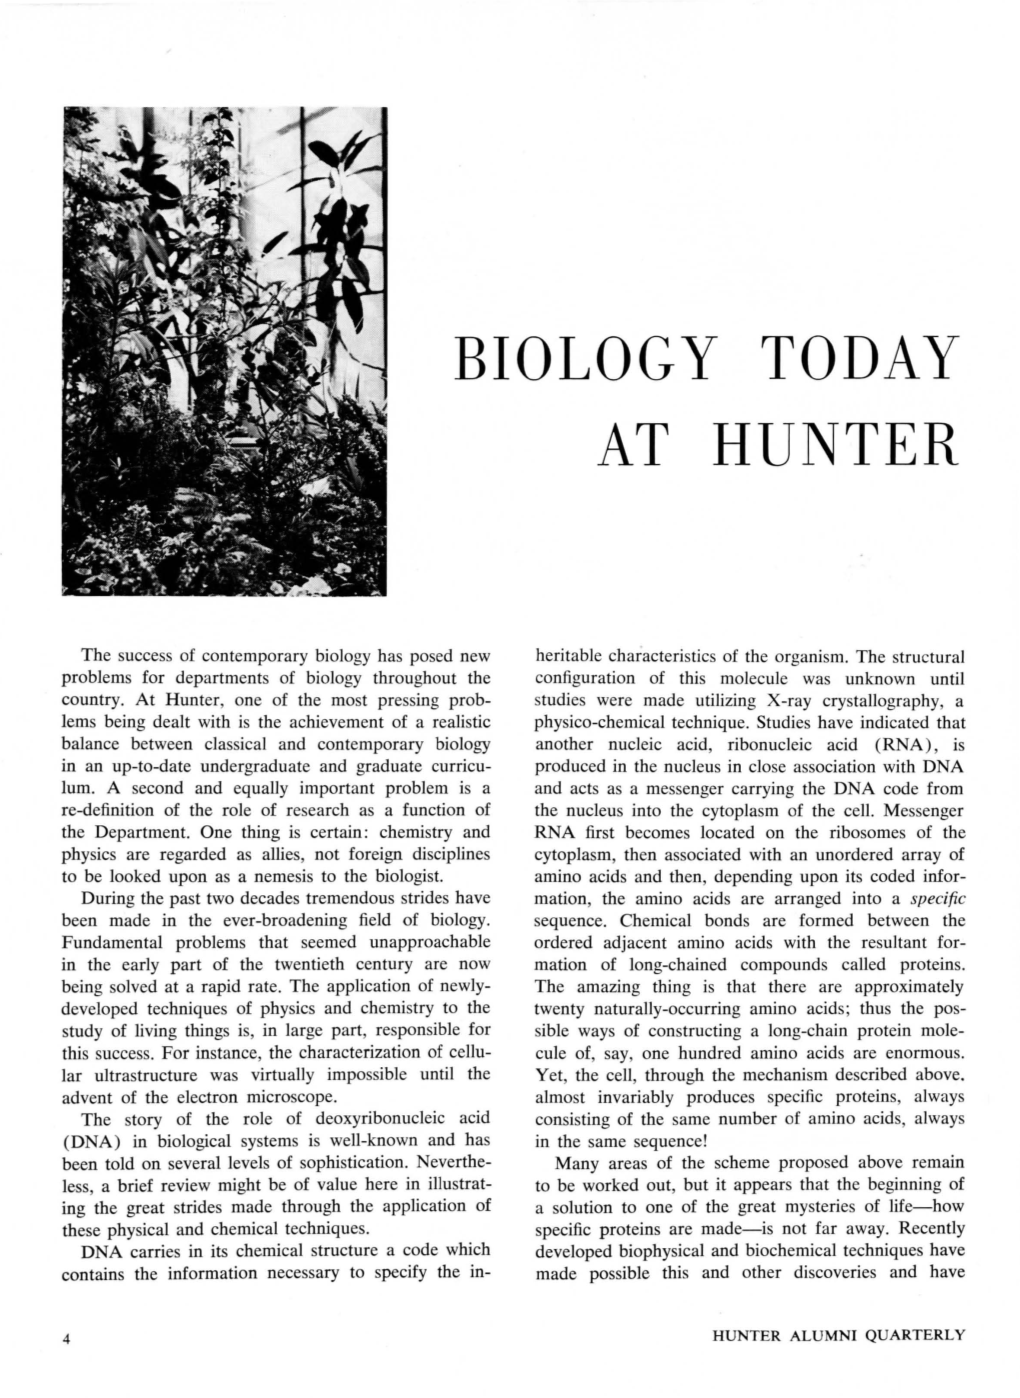 Biology Today at Hunter